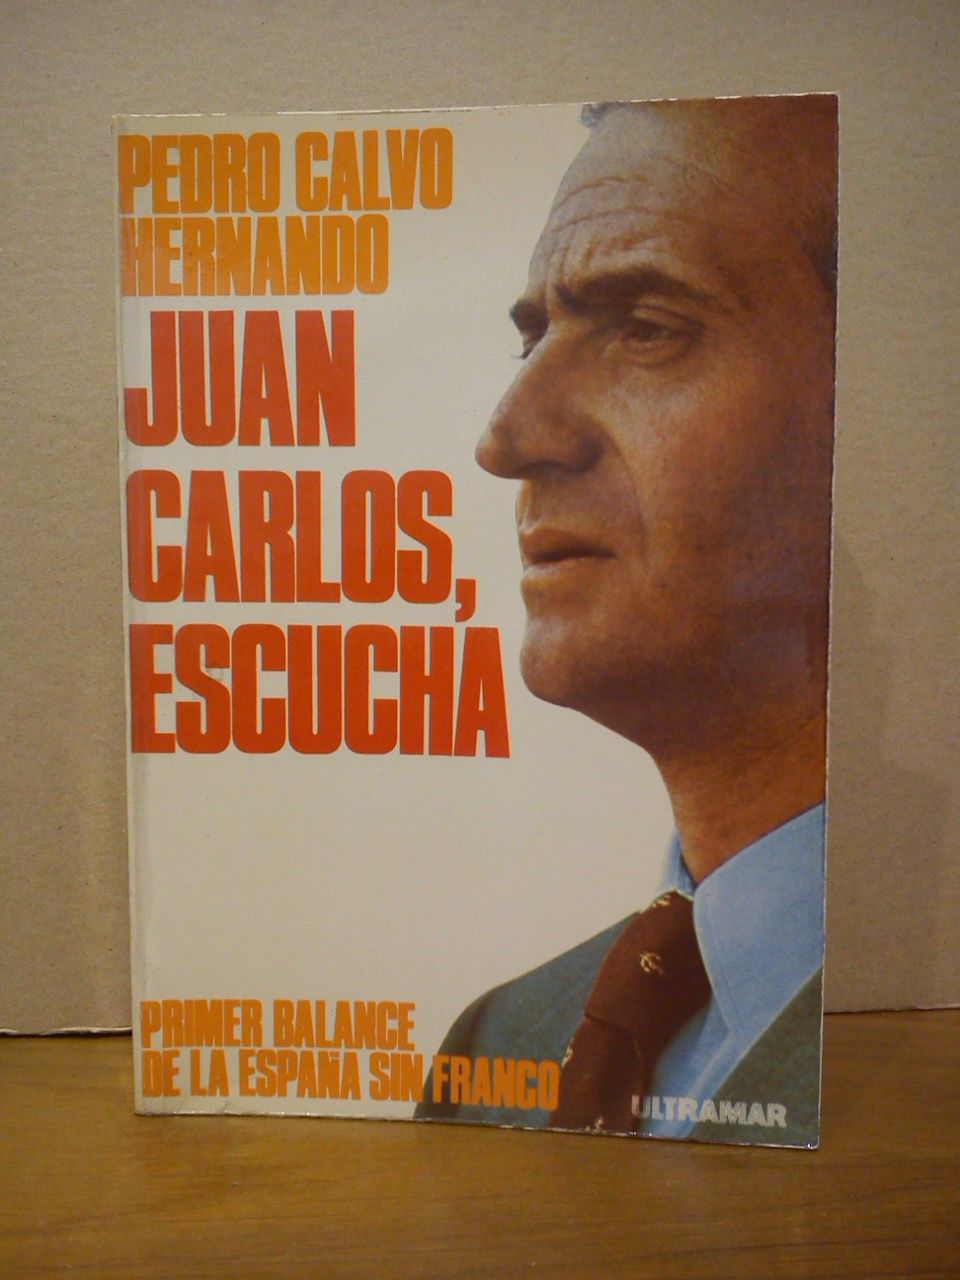 CALVO HERNANDO, Pedro - Juan Carlos, escucha. Primer balance de la Espaa sin Franco